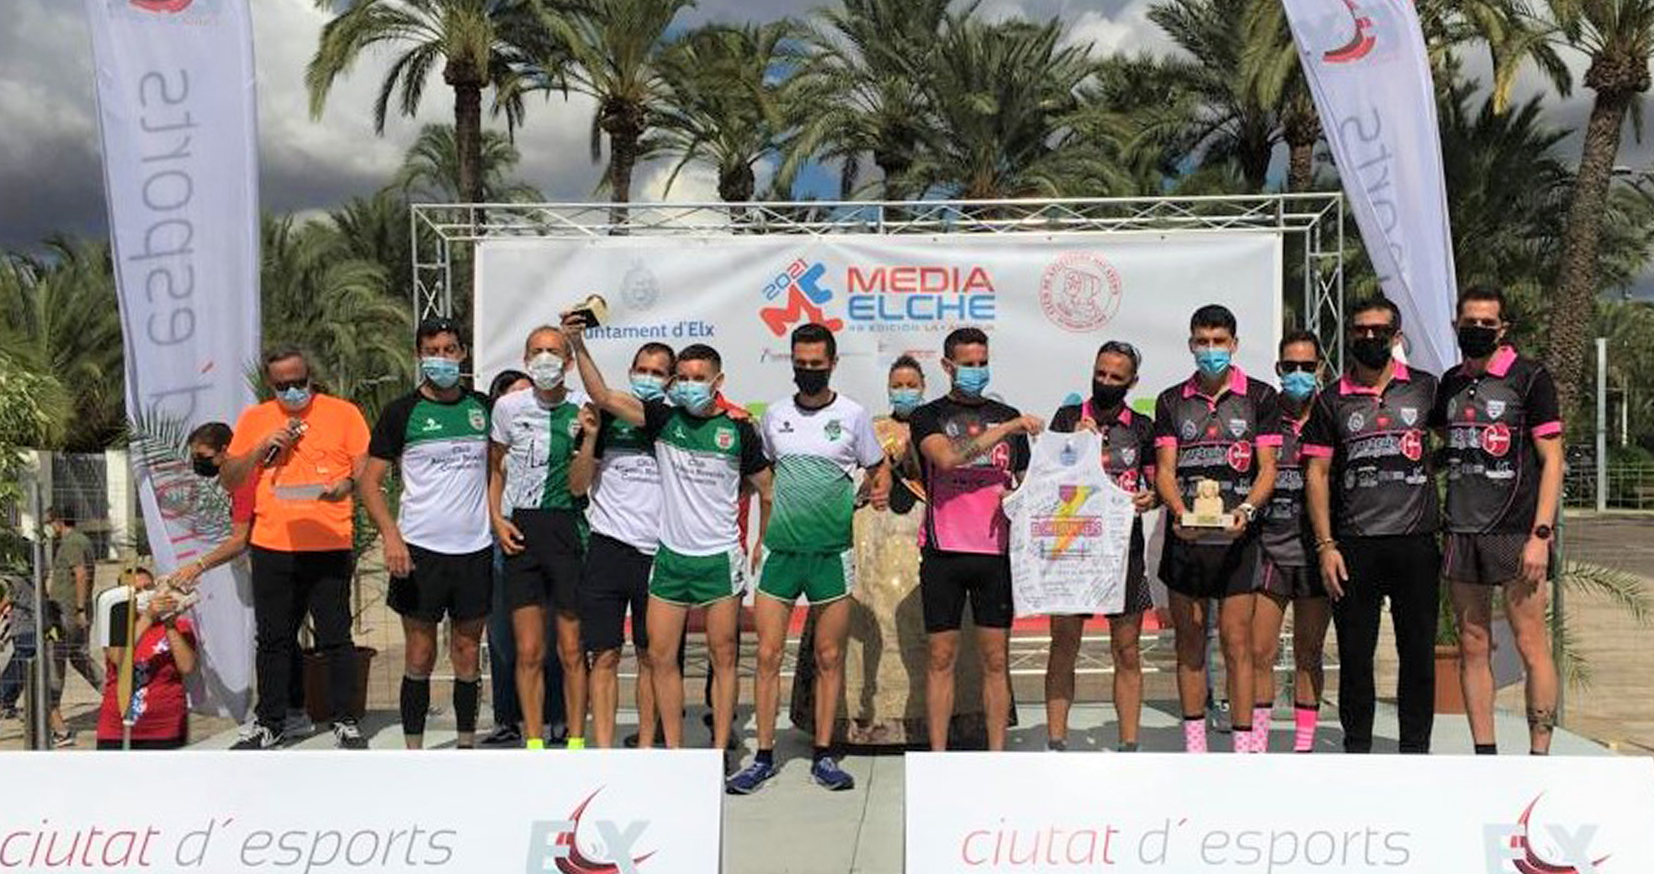 Gran victoria por equipos del Club Atlético Novelda Carmencita en la  48 Media maratón internacional ciudad de Elche